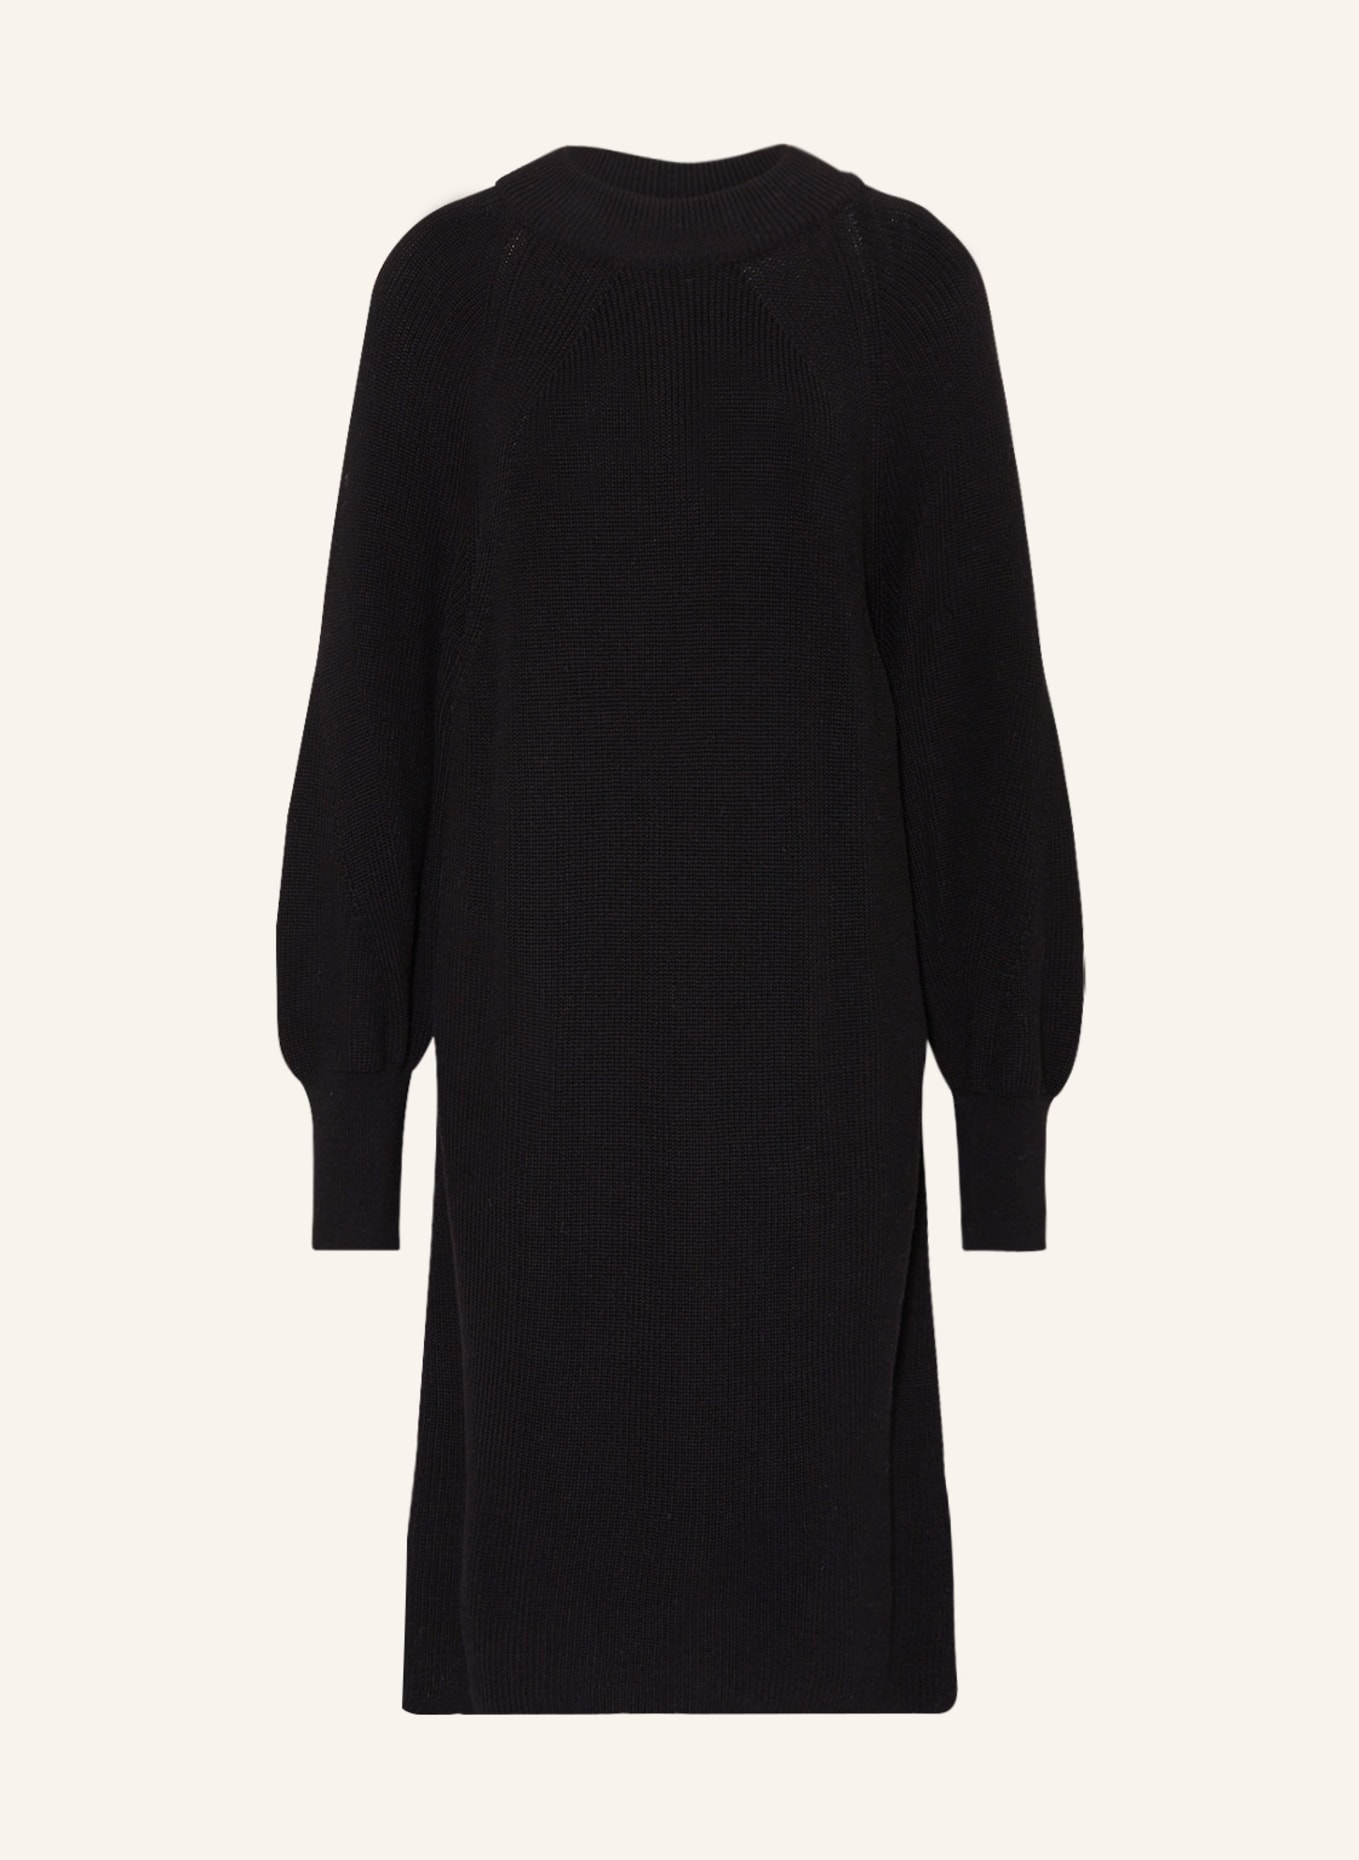 BARBOUR INTERNATIONAL Knit dress BOULEVARD, Color: BLACK (Image 1)